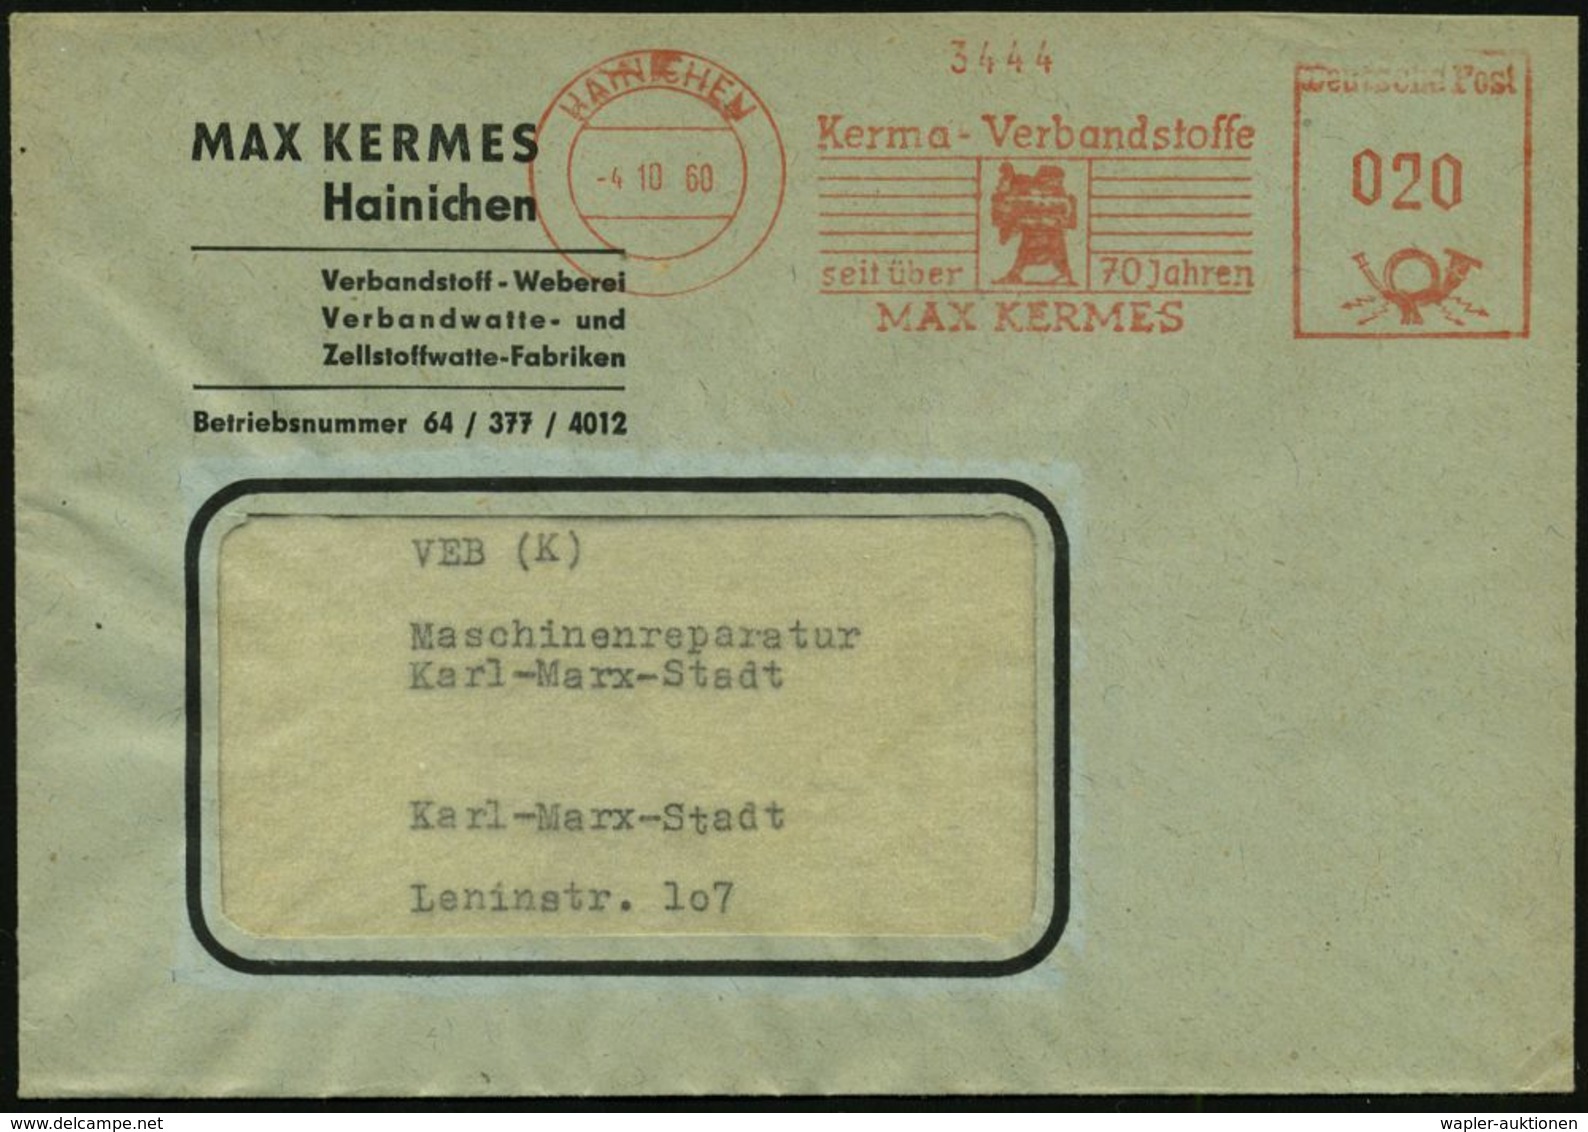 MEDIZINISCHE AUSRÜSTUNG & INSTRUMENTE : HAINICHEN/ Kerma-Verbandsstoffe/ Seit über 70 Jahren/ MAX KERMES 1960 (4.10.) AF - Médecine